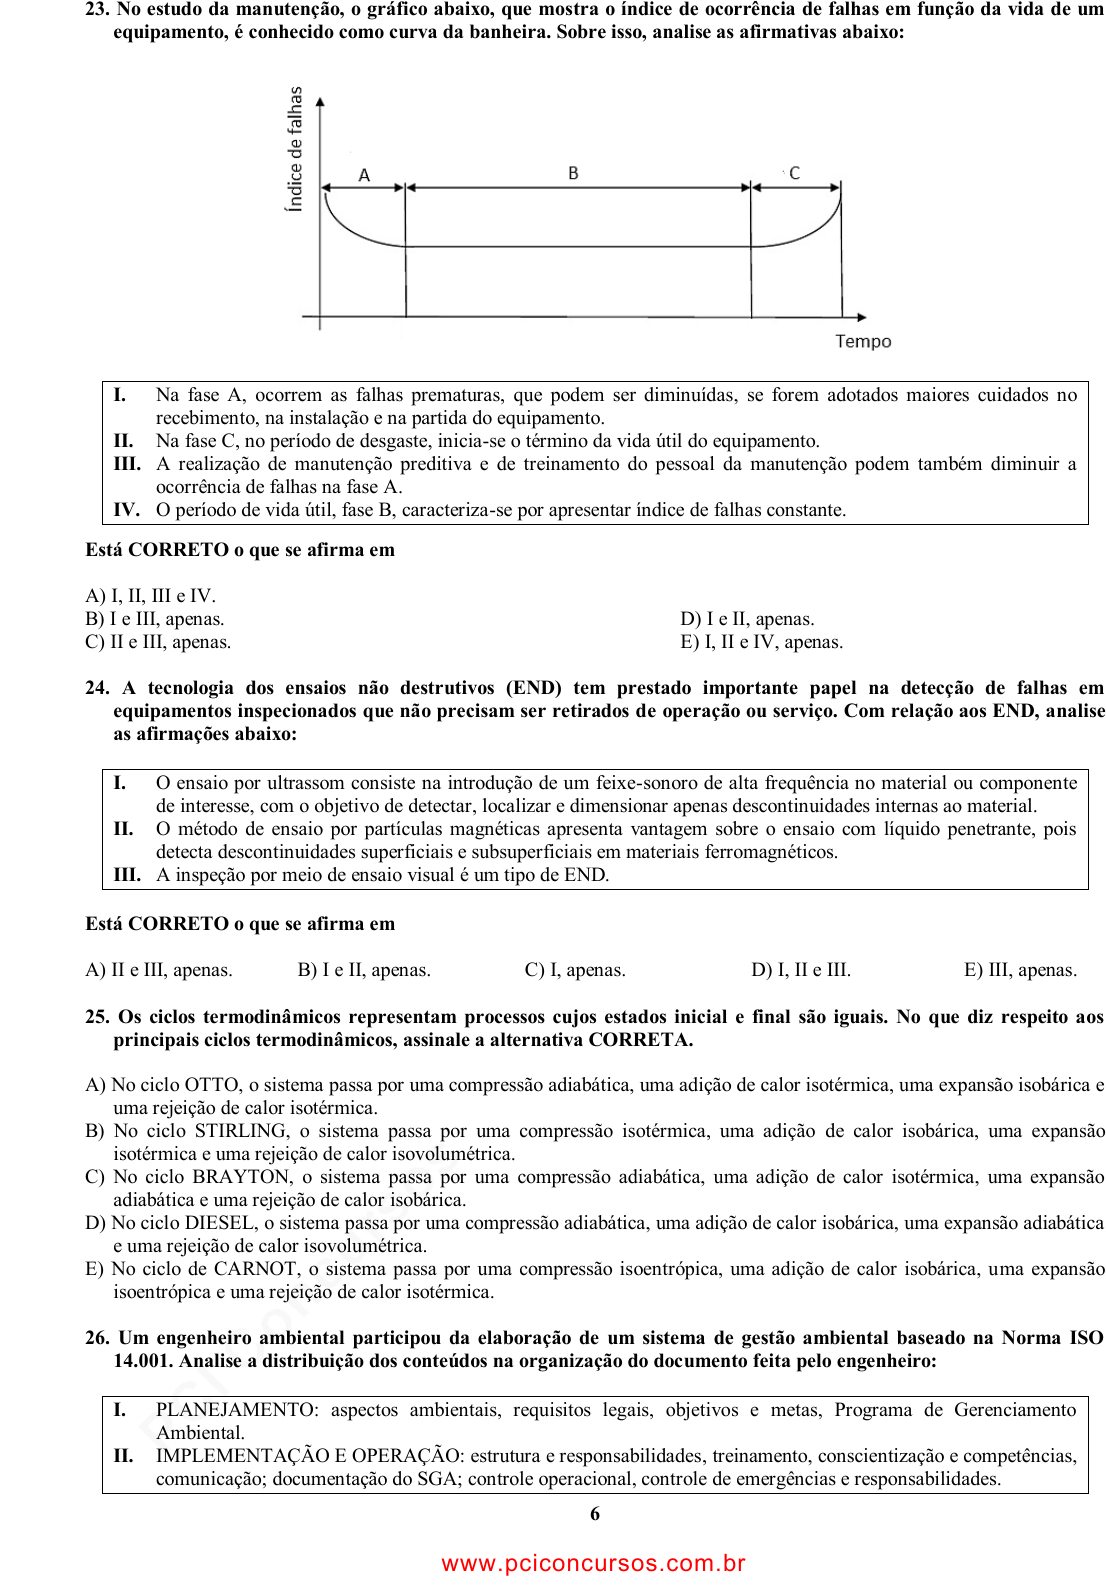 Prova COMPESA - UPENETIAUPE - 2013 - para Analista de Saneamento -  Engenheiro Mecânico.pdf - Provas de Concursos Públicos